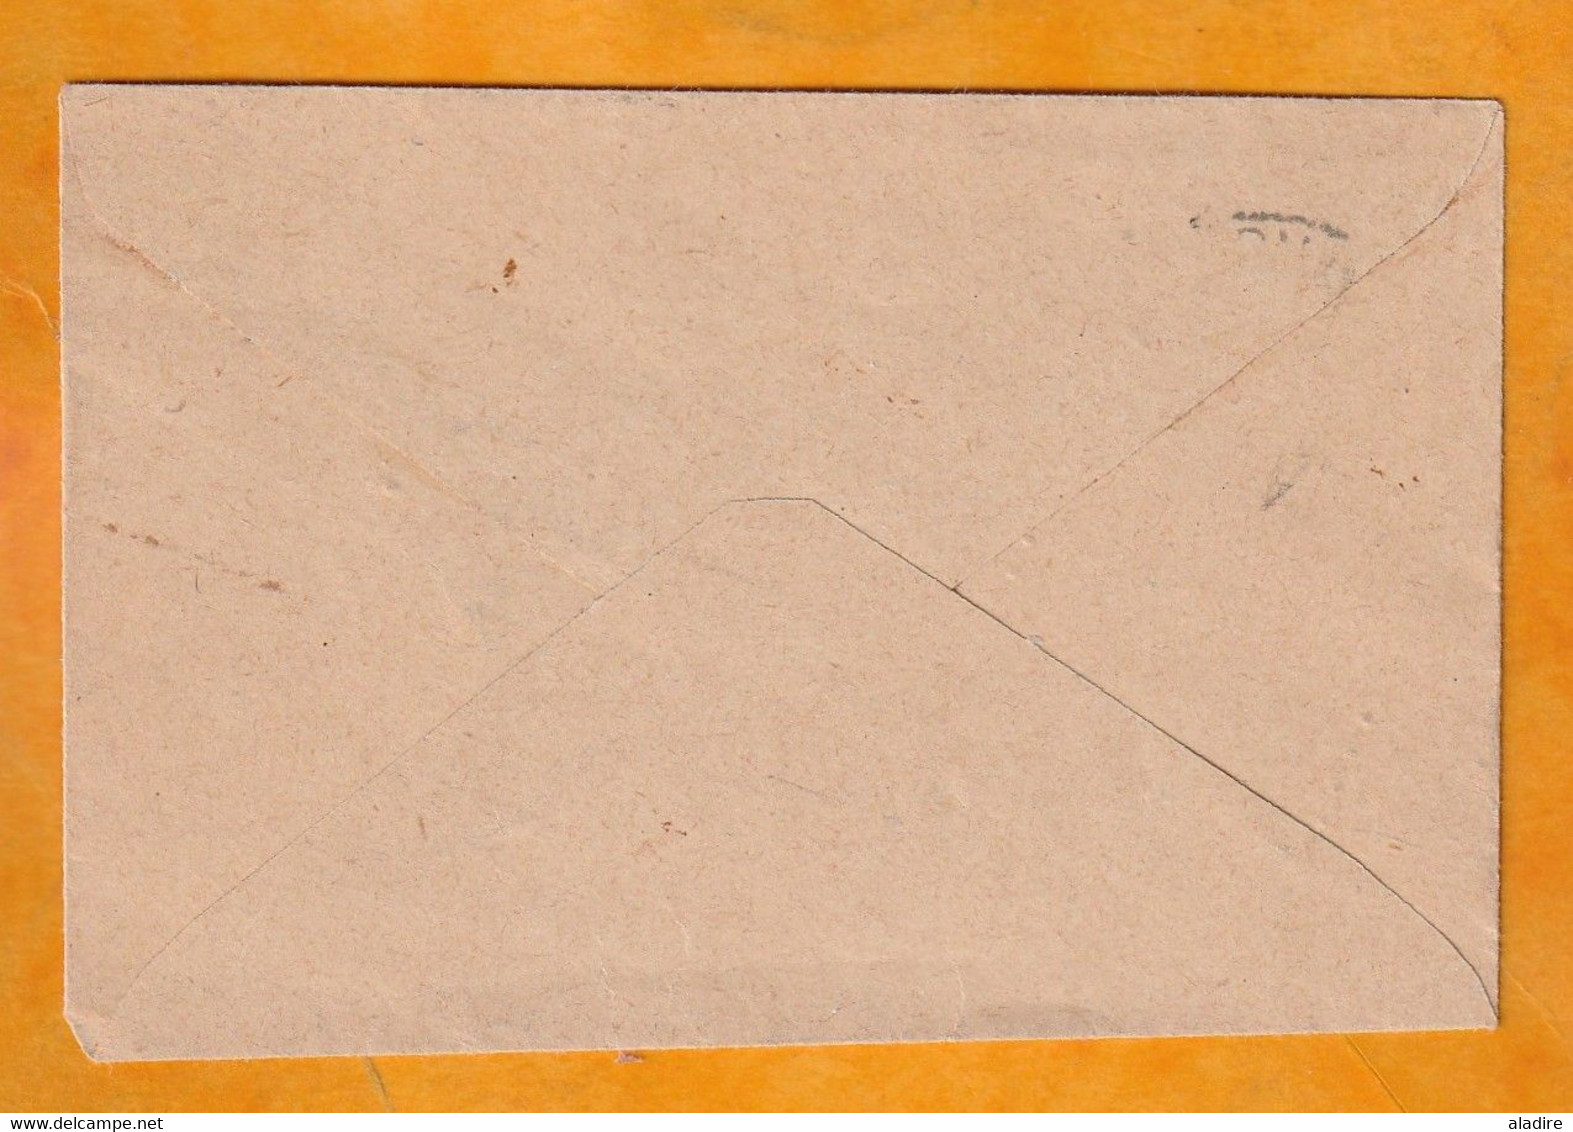 1945 - Pénurie De Timbre 2e Guerre Mondiale - Enveloppe Mignonnette De Tananarive RP Vers Anjoly - Lettres & Documents